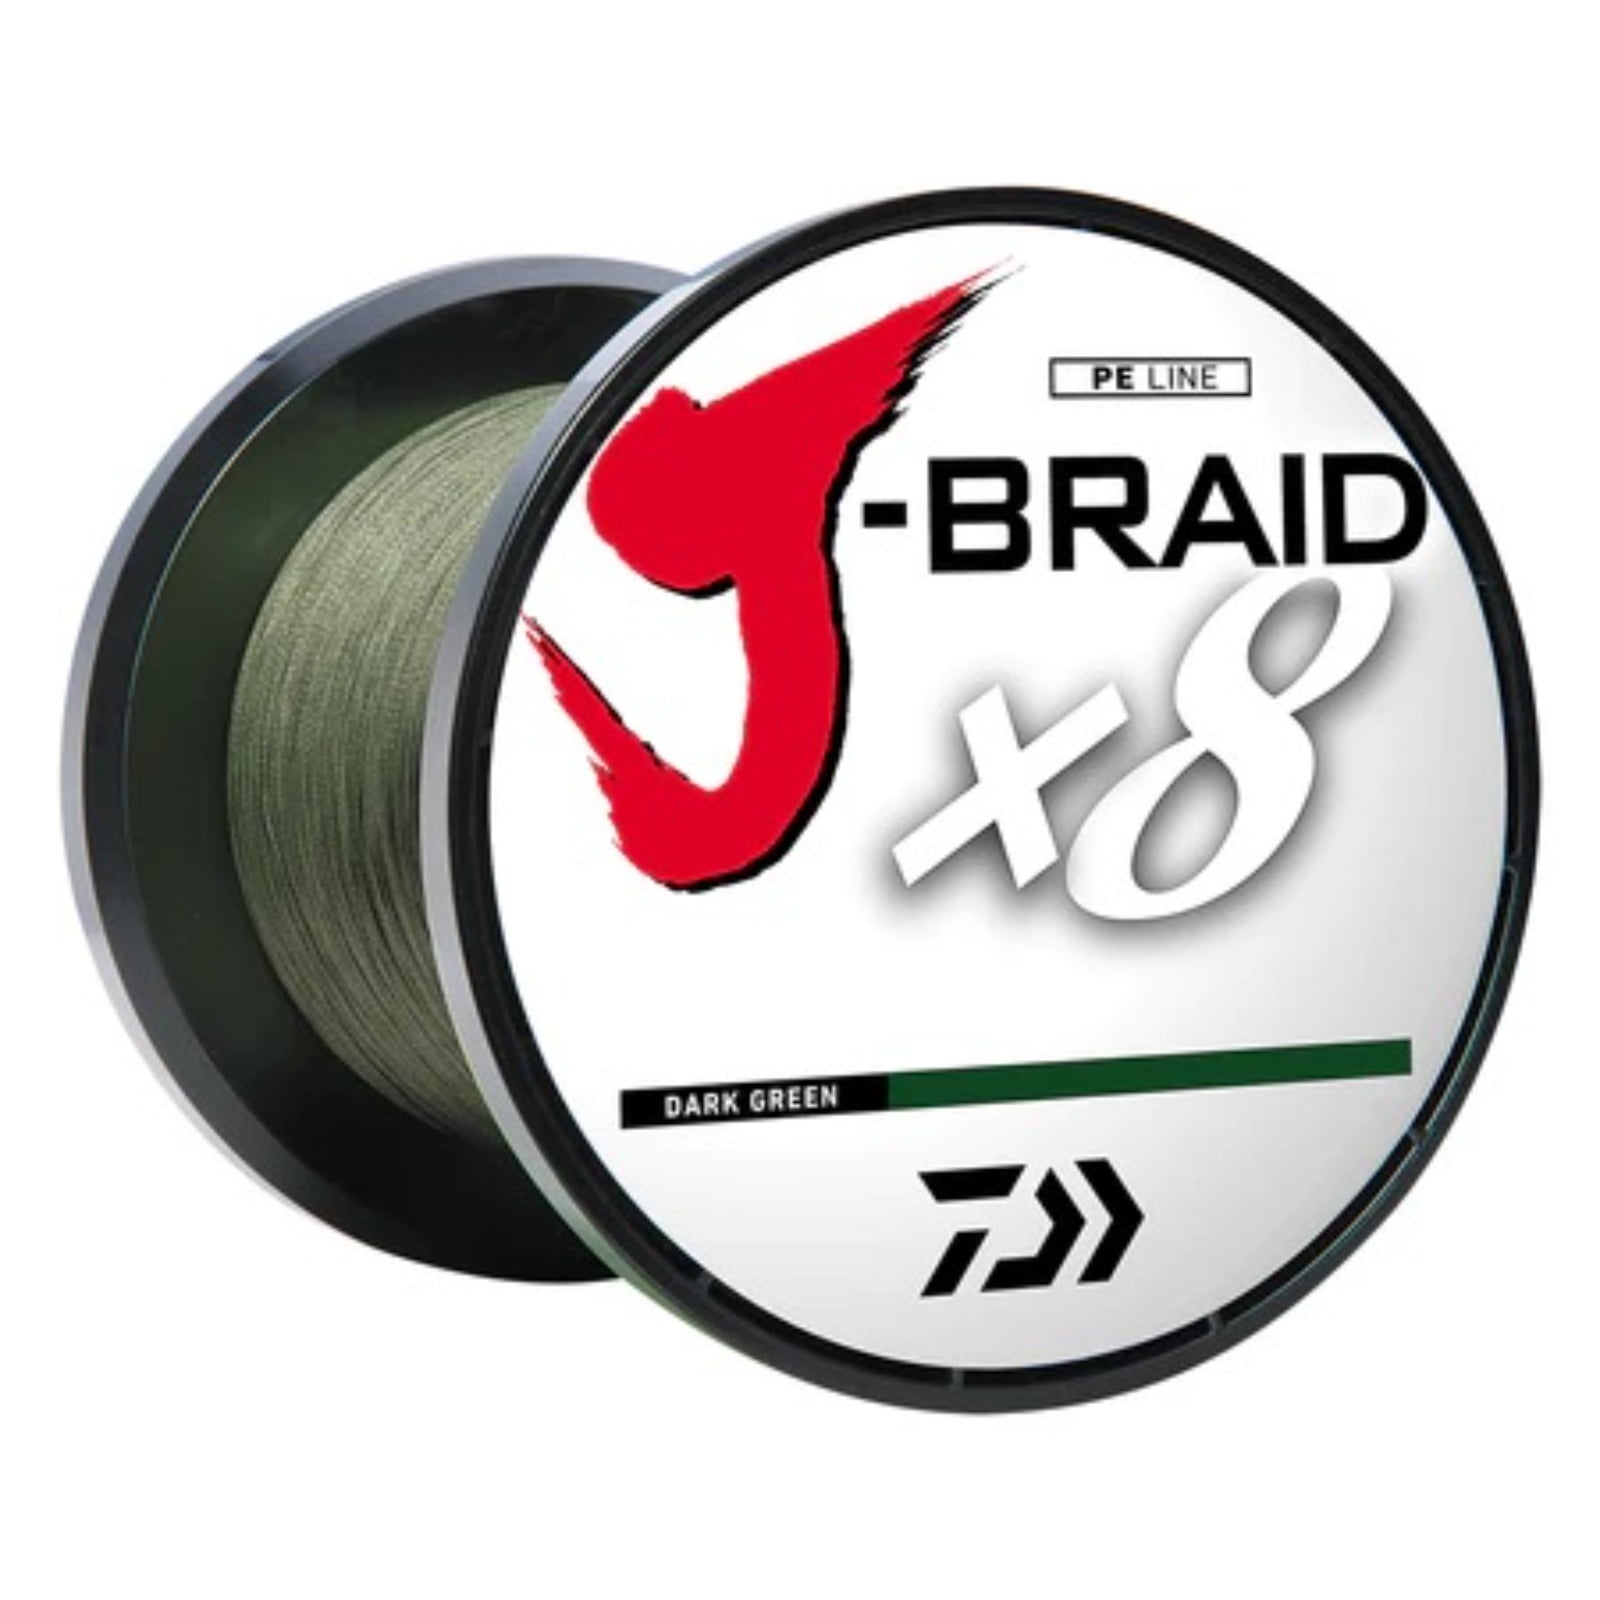 Daiwa J-Braid x8 GRAND Braided Line DARK GREEN 50lb, 3000yd -  JBGD8U50-3000DG 